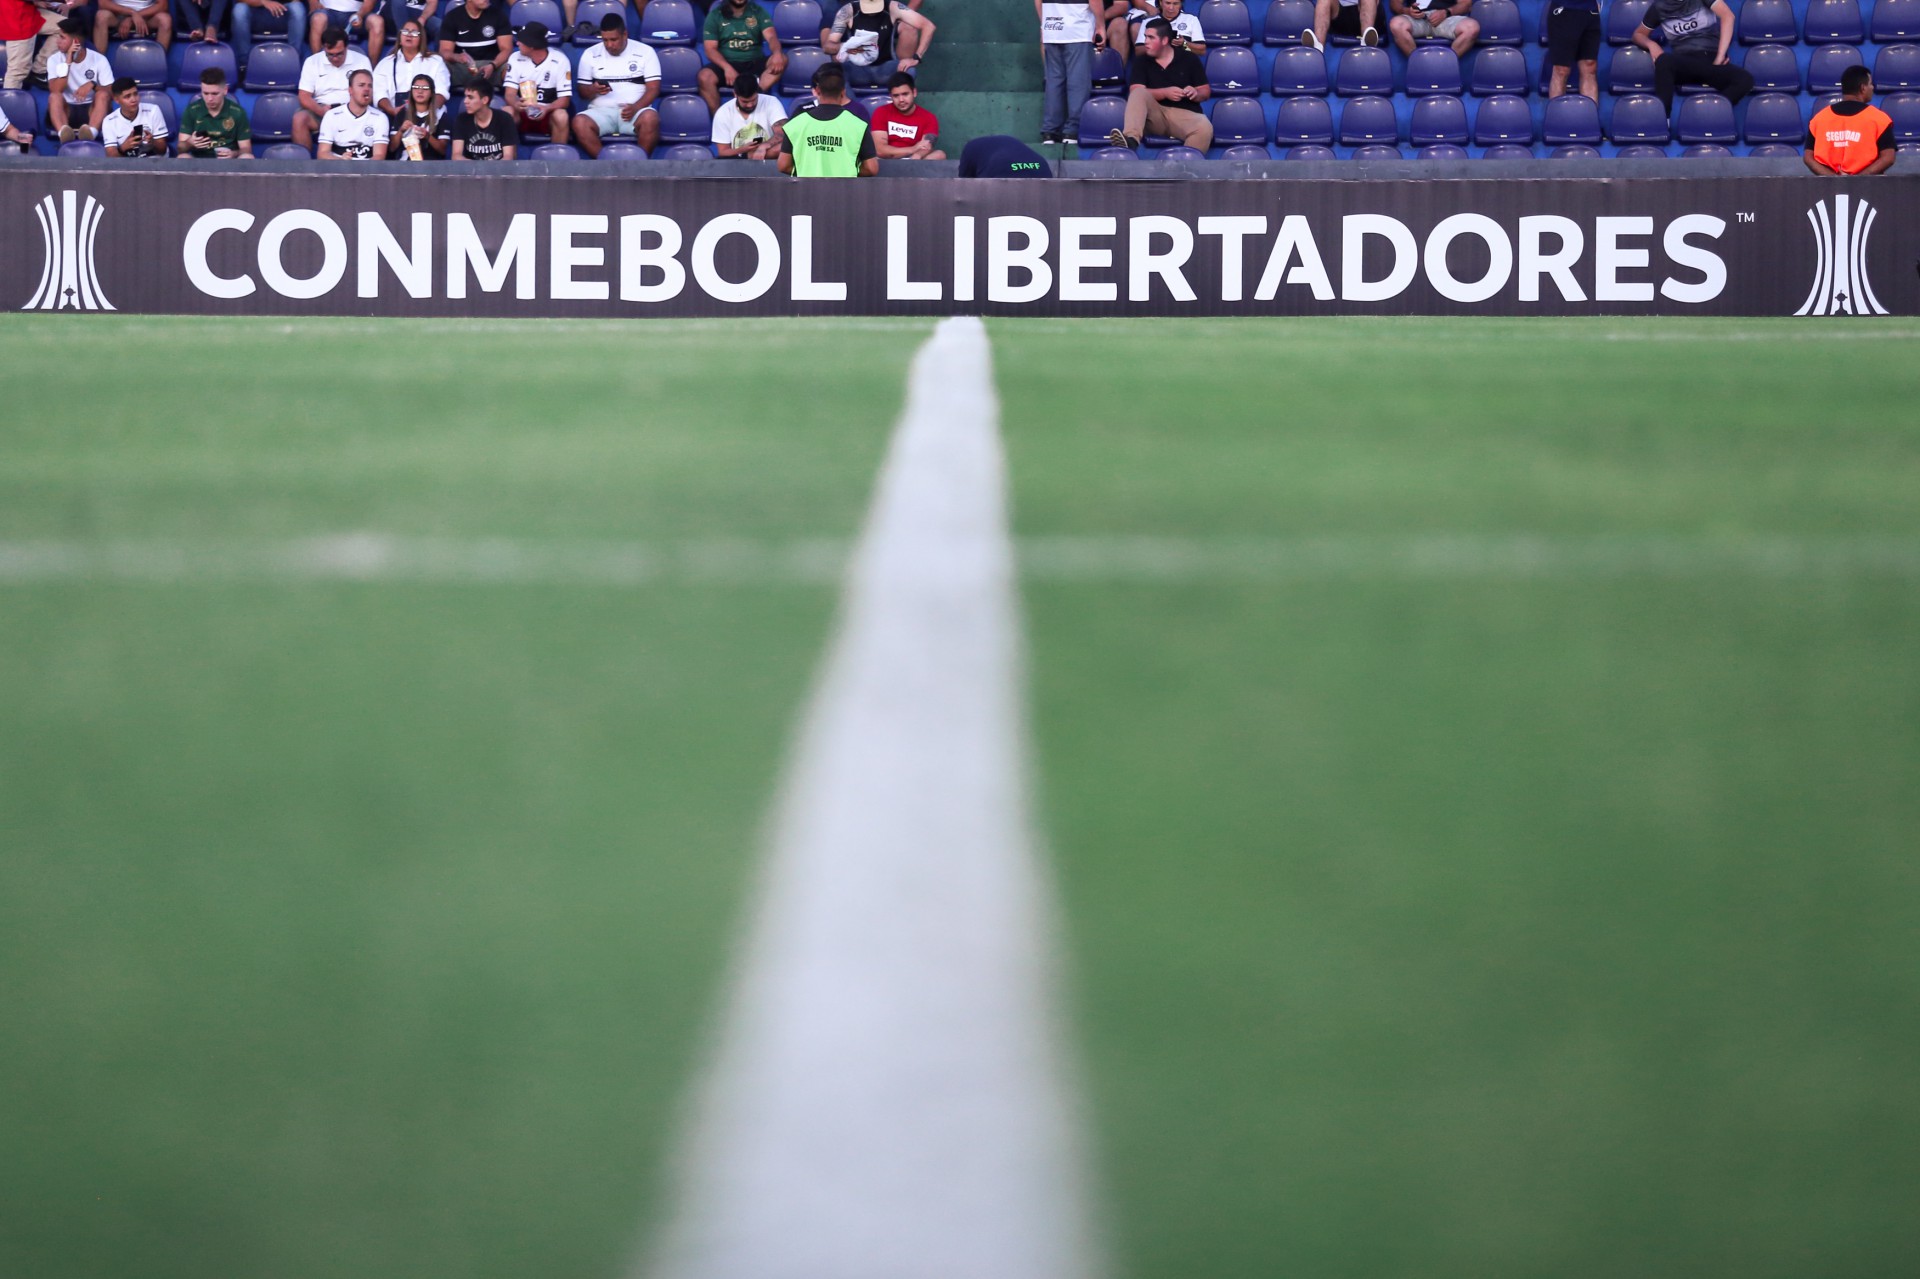 Coragem no pé: times de Joinville usam o futebol amador na luta contra o  racismo e homofobia - NSC Total